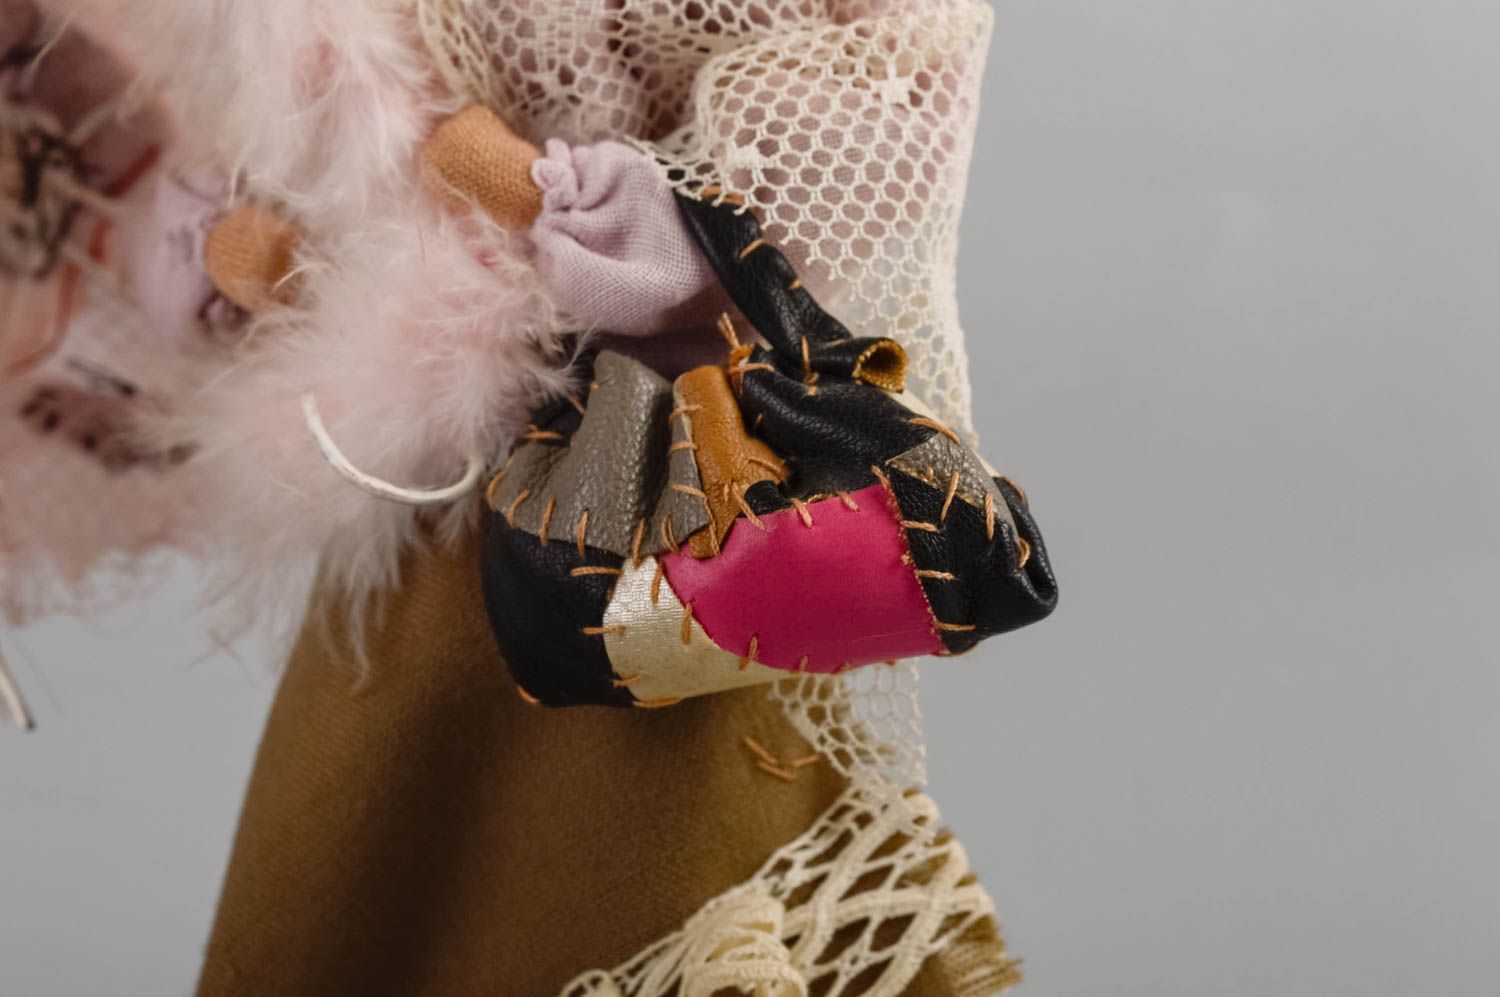 Игрушка кукла из ткани небольшая девушка нарядная для декора ручная работа фото 4